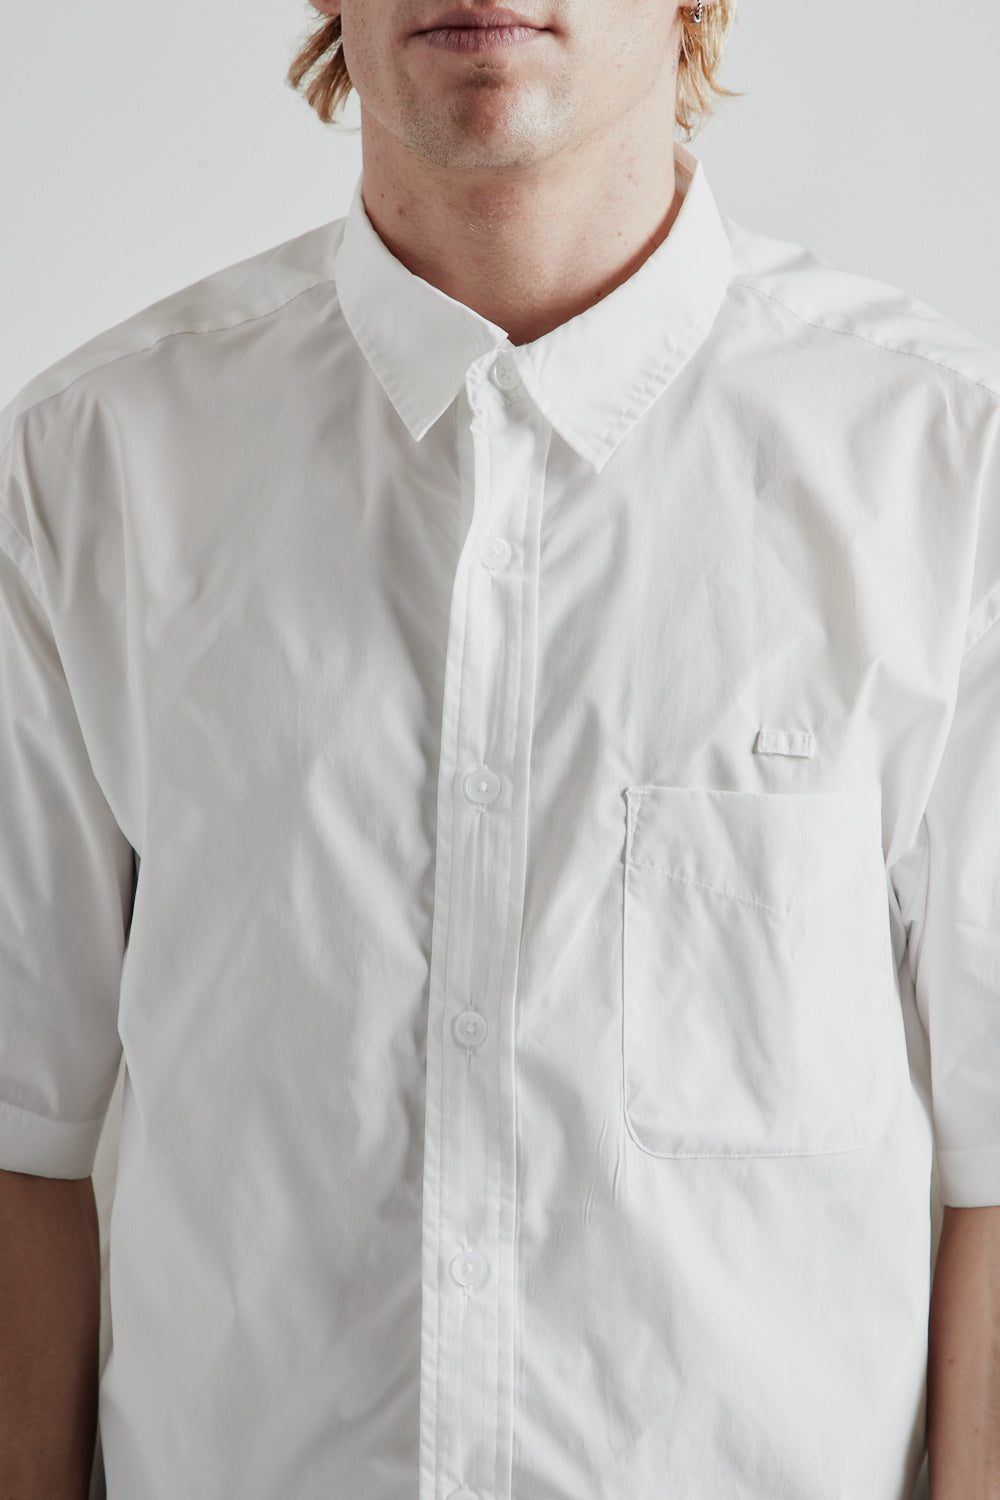 Frizmworks OG Poplin Oversized Shirt in White